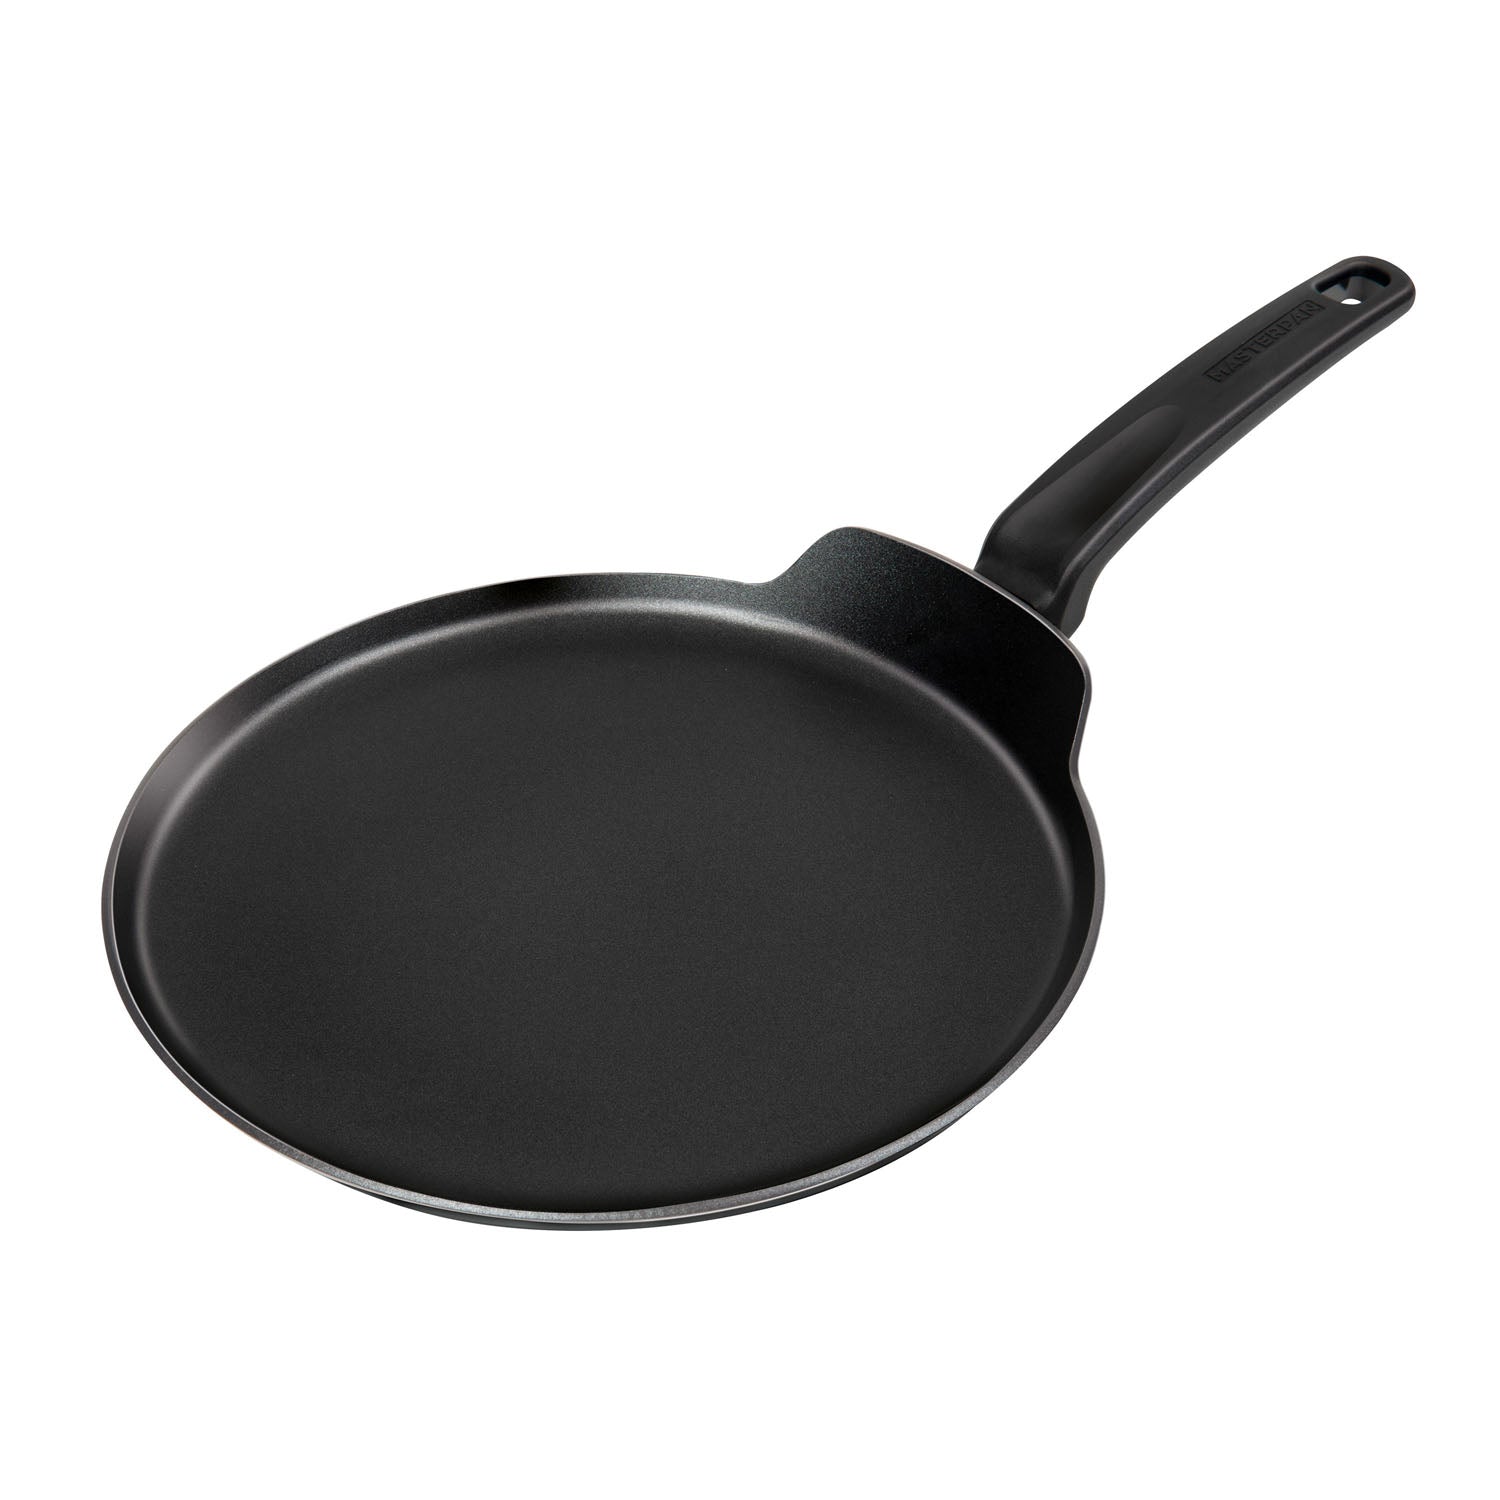 Non Stick Skillet Pan, 11 inch Nonstick Crepe Pan Dosa Pan, Die-Cast Auluminium Pancake Griddle Pan, PFOA Free Cooking Pan for Tortillas, Pancakes